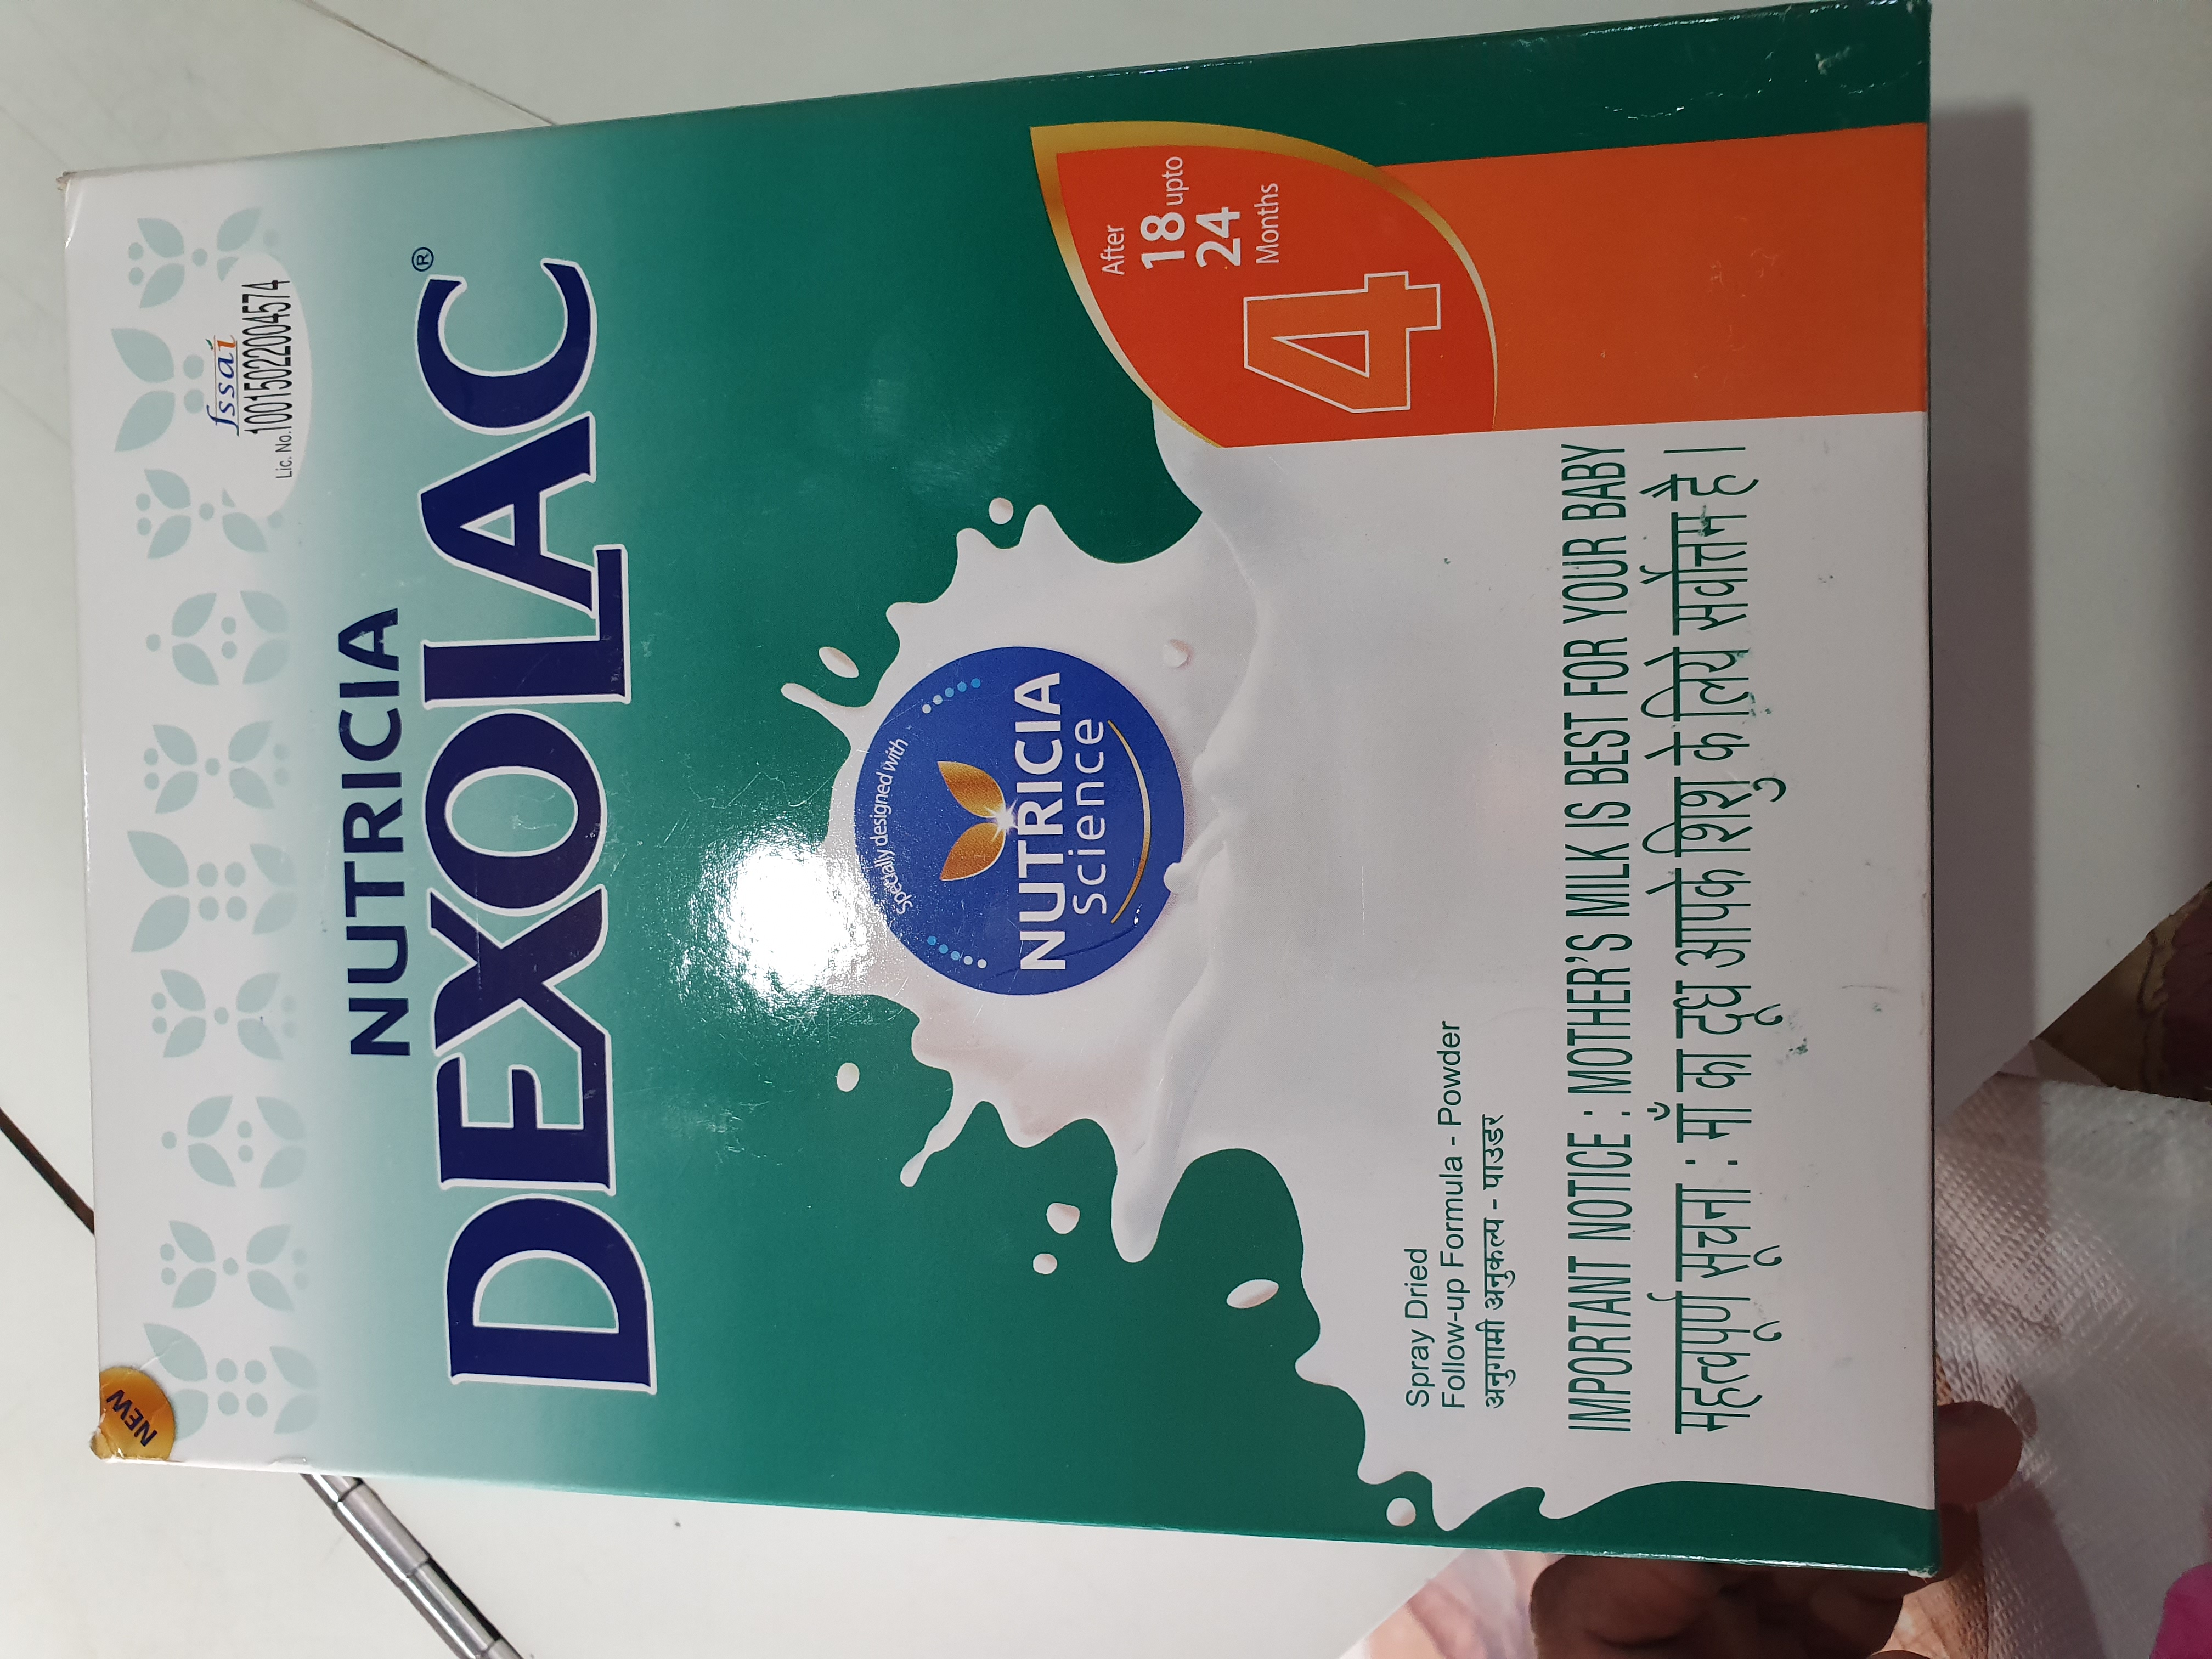 dexolac powder for newborn